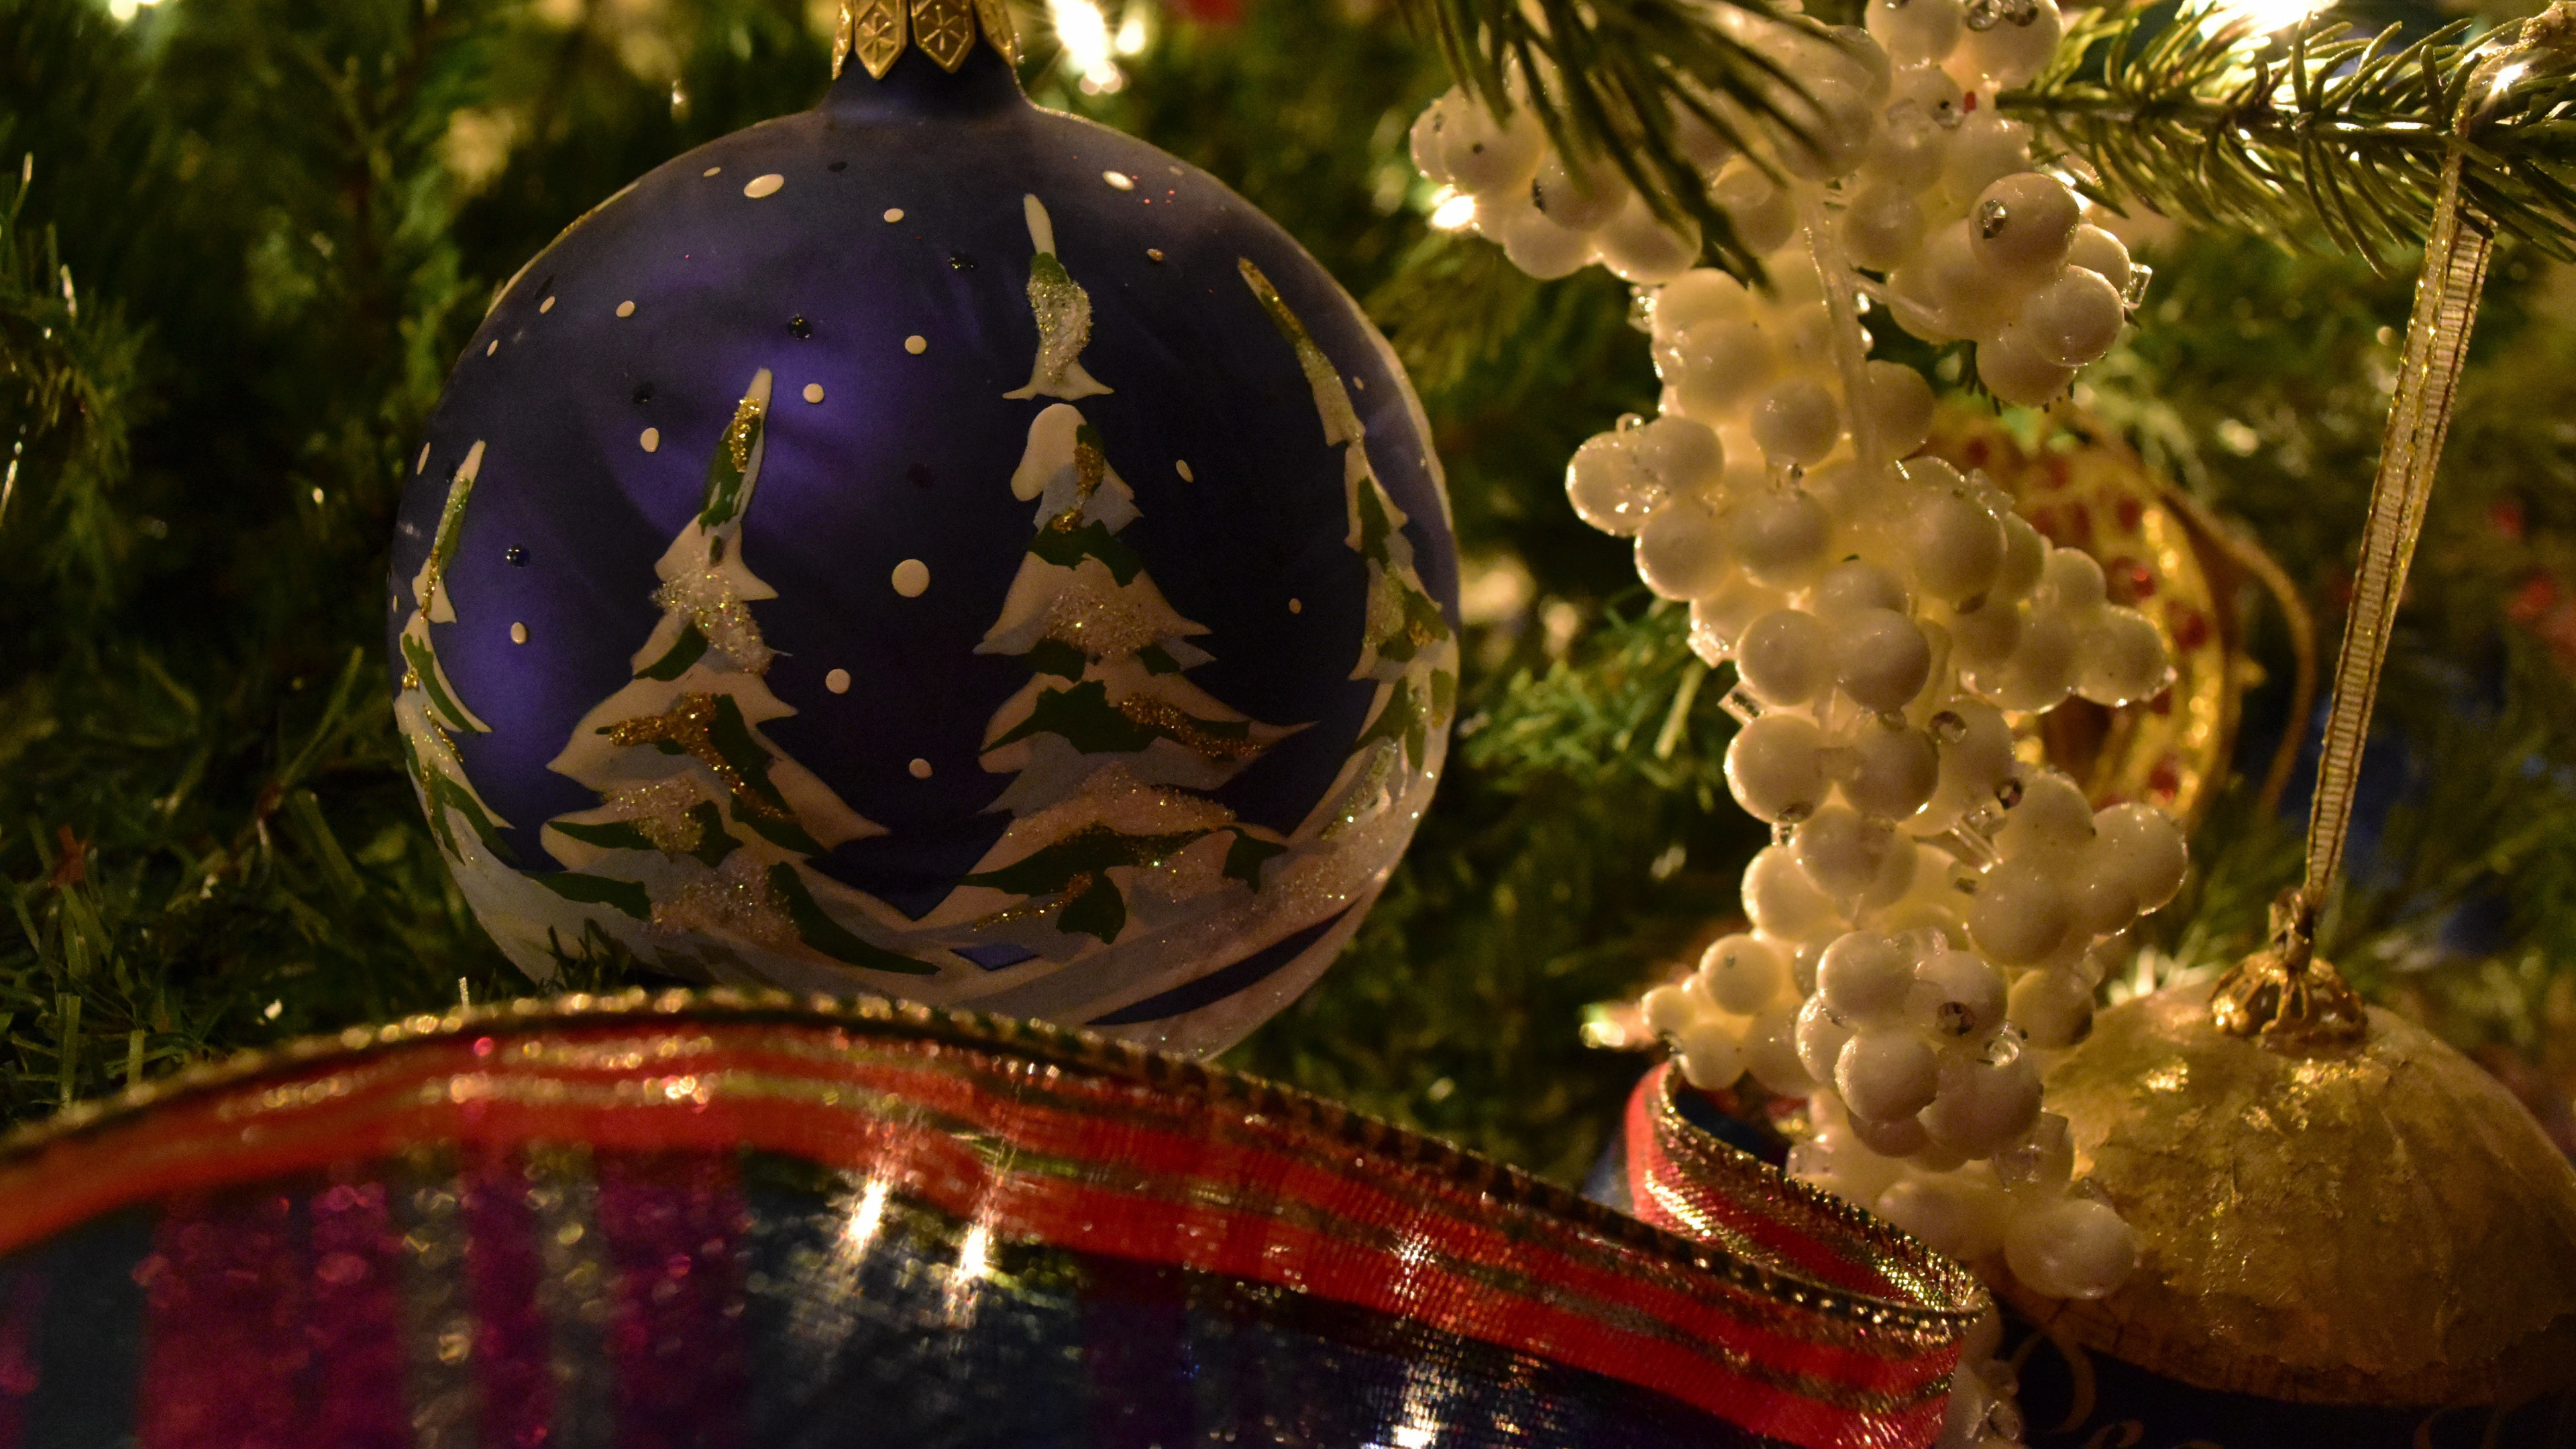 圣诞节那天, 新的一年的树, 圣诞树, 新的一年, 圣诞节的装饰品 壁纸 3840x2160 允许